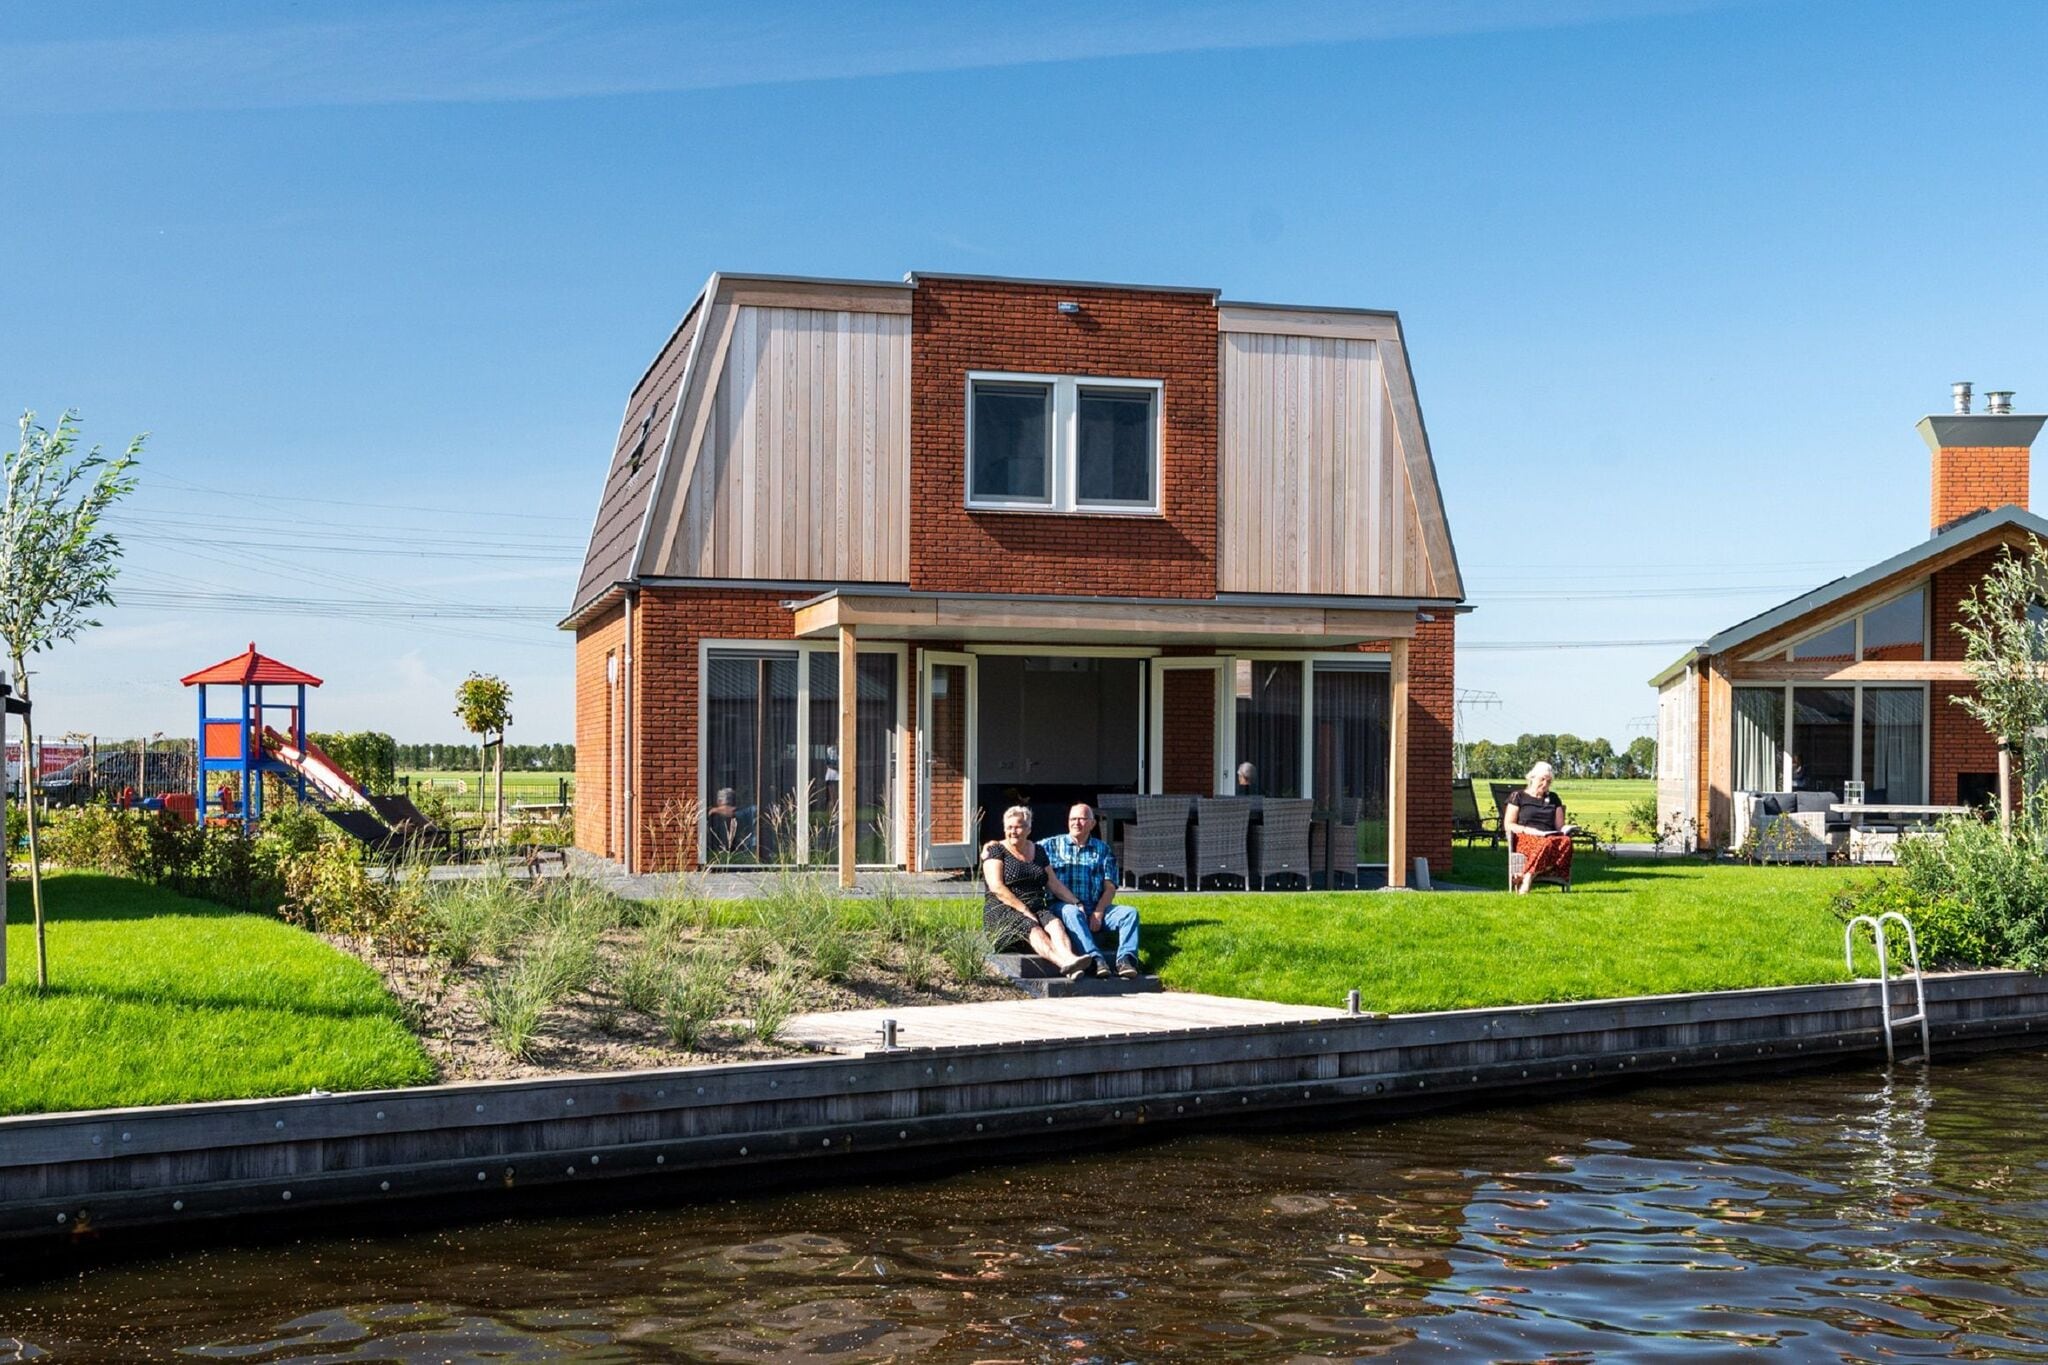 Maison de vacances avec jetée près de Sneekermeer